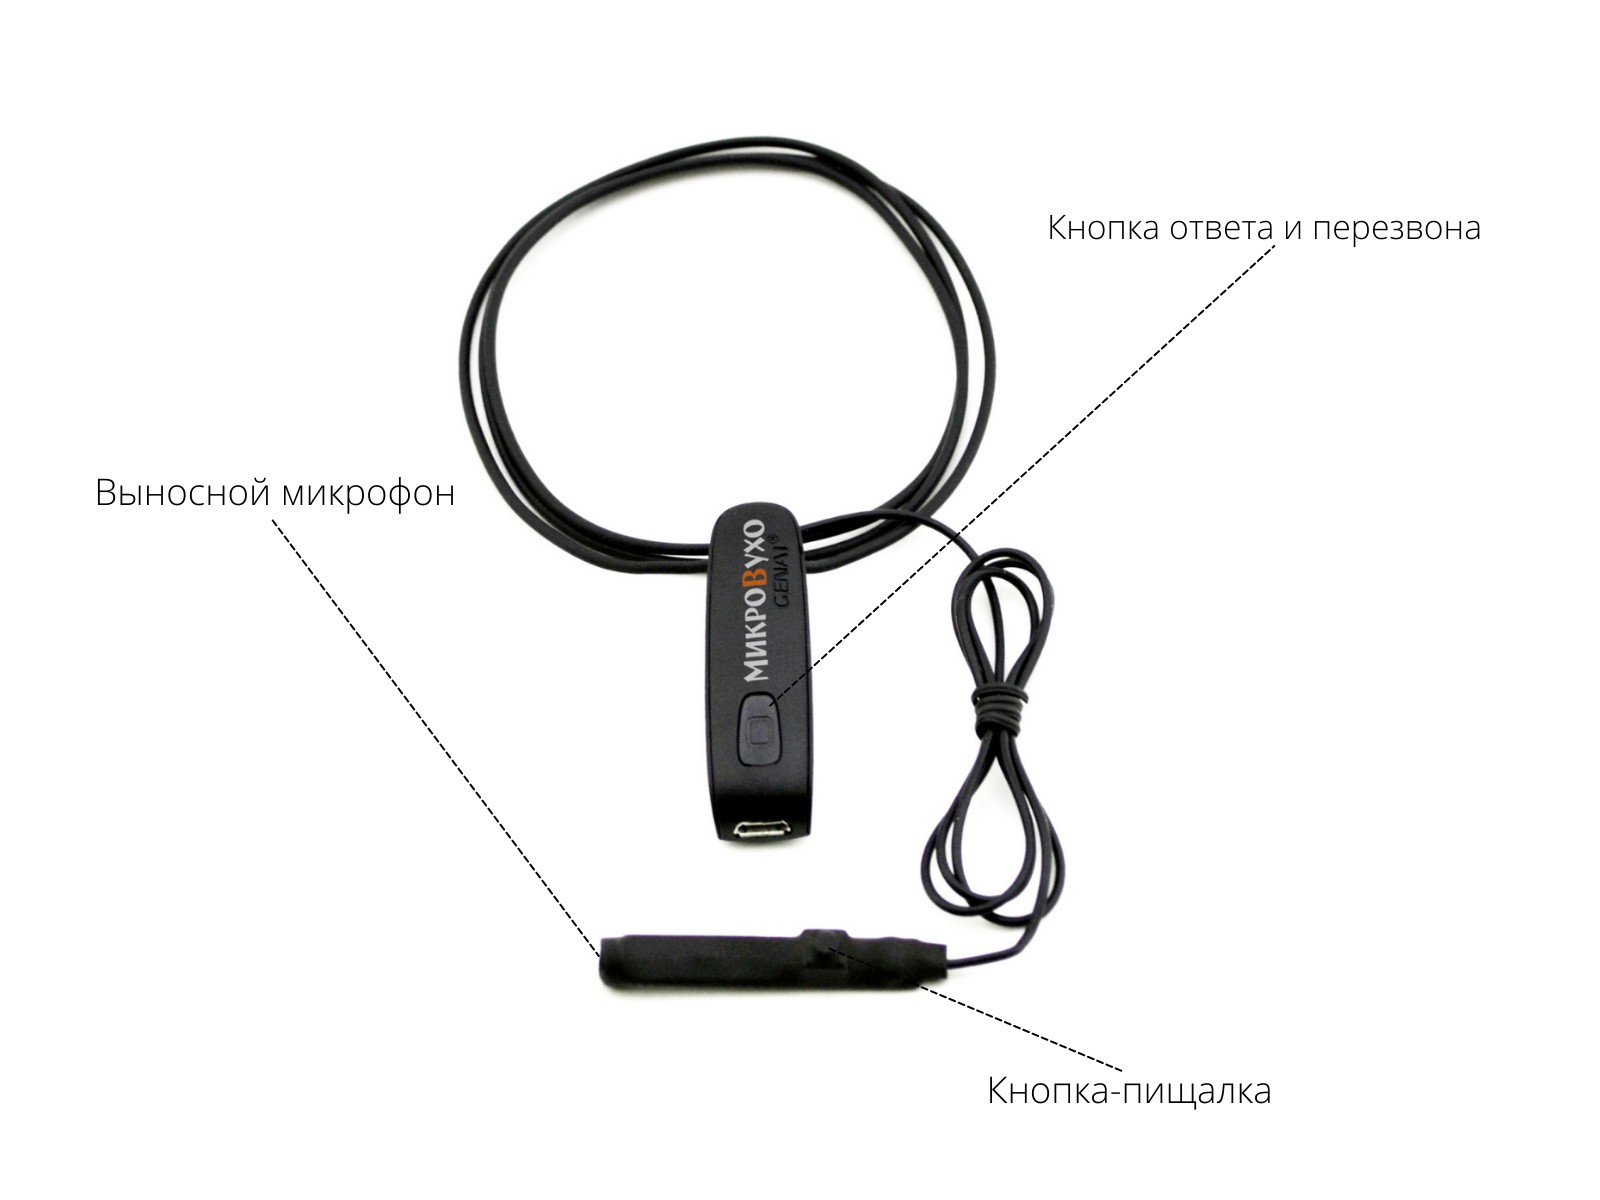 Гарнитура Bluetooth Basic с капсульным микронаушником K5 4 мм 4